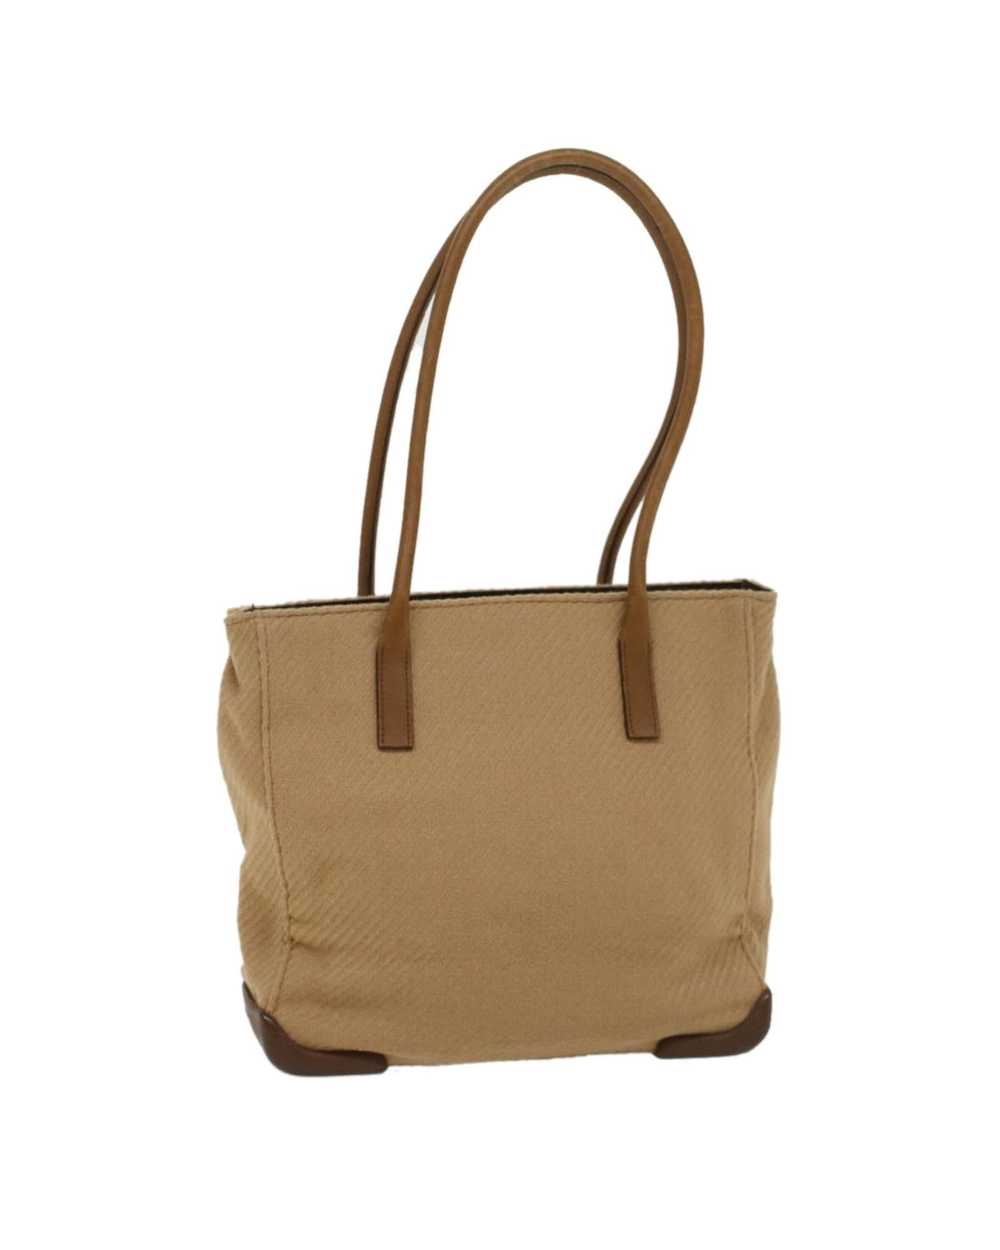 Prada Luxurious Brown Wool Tote Bag - image 1